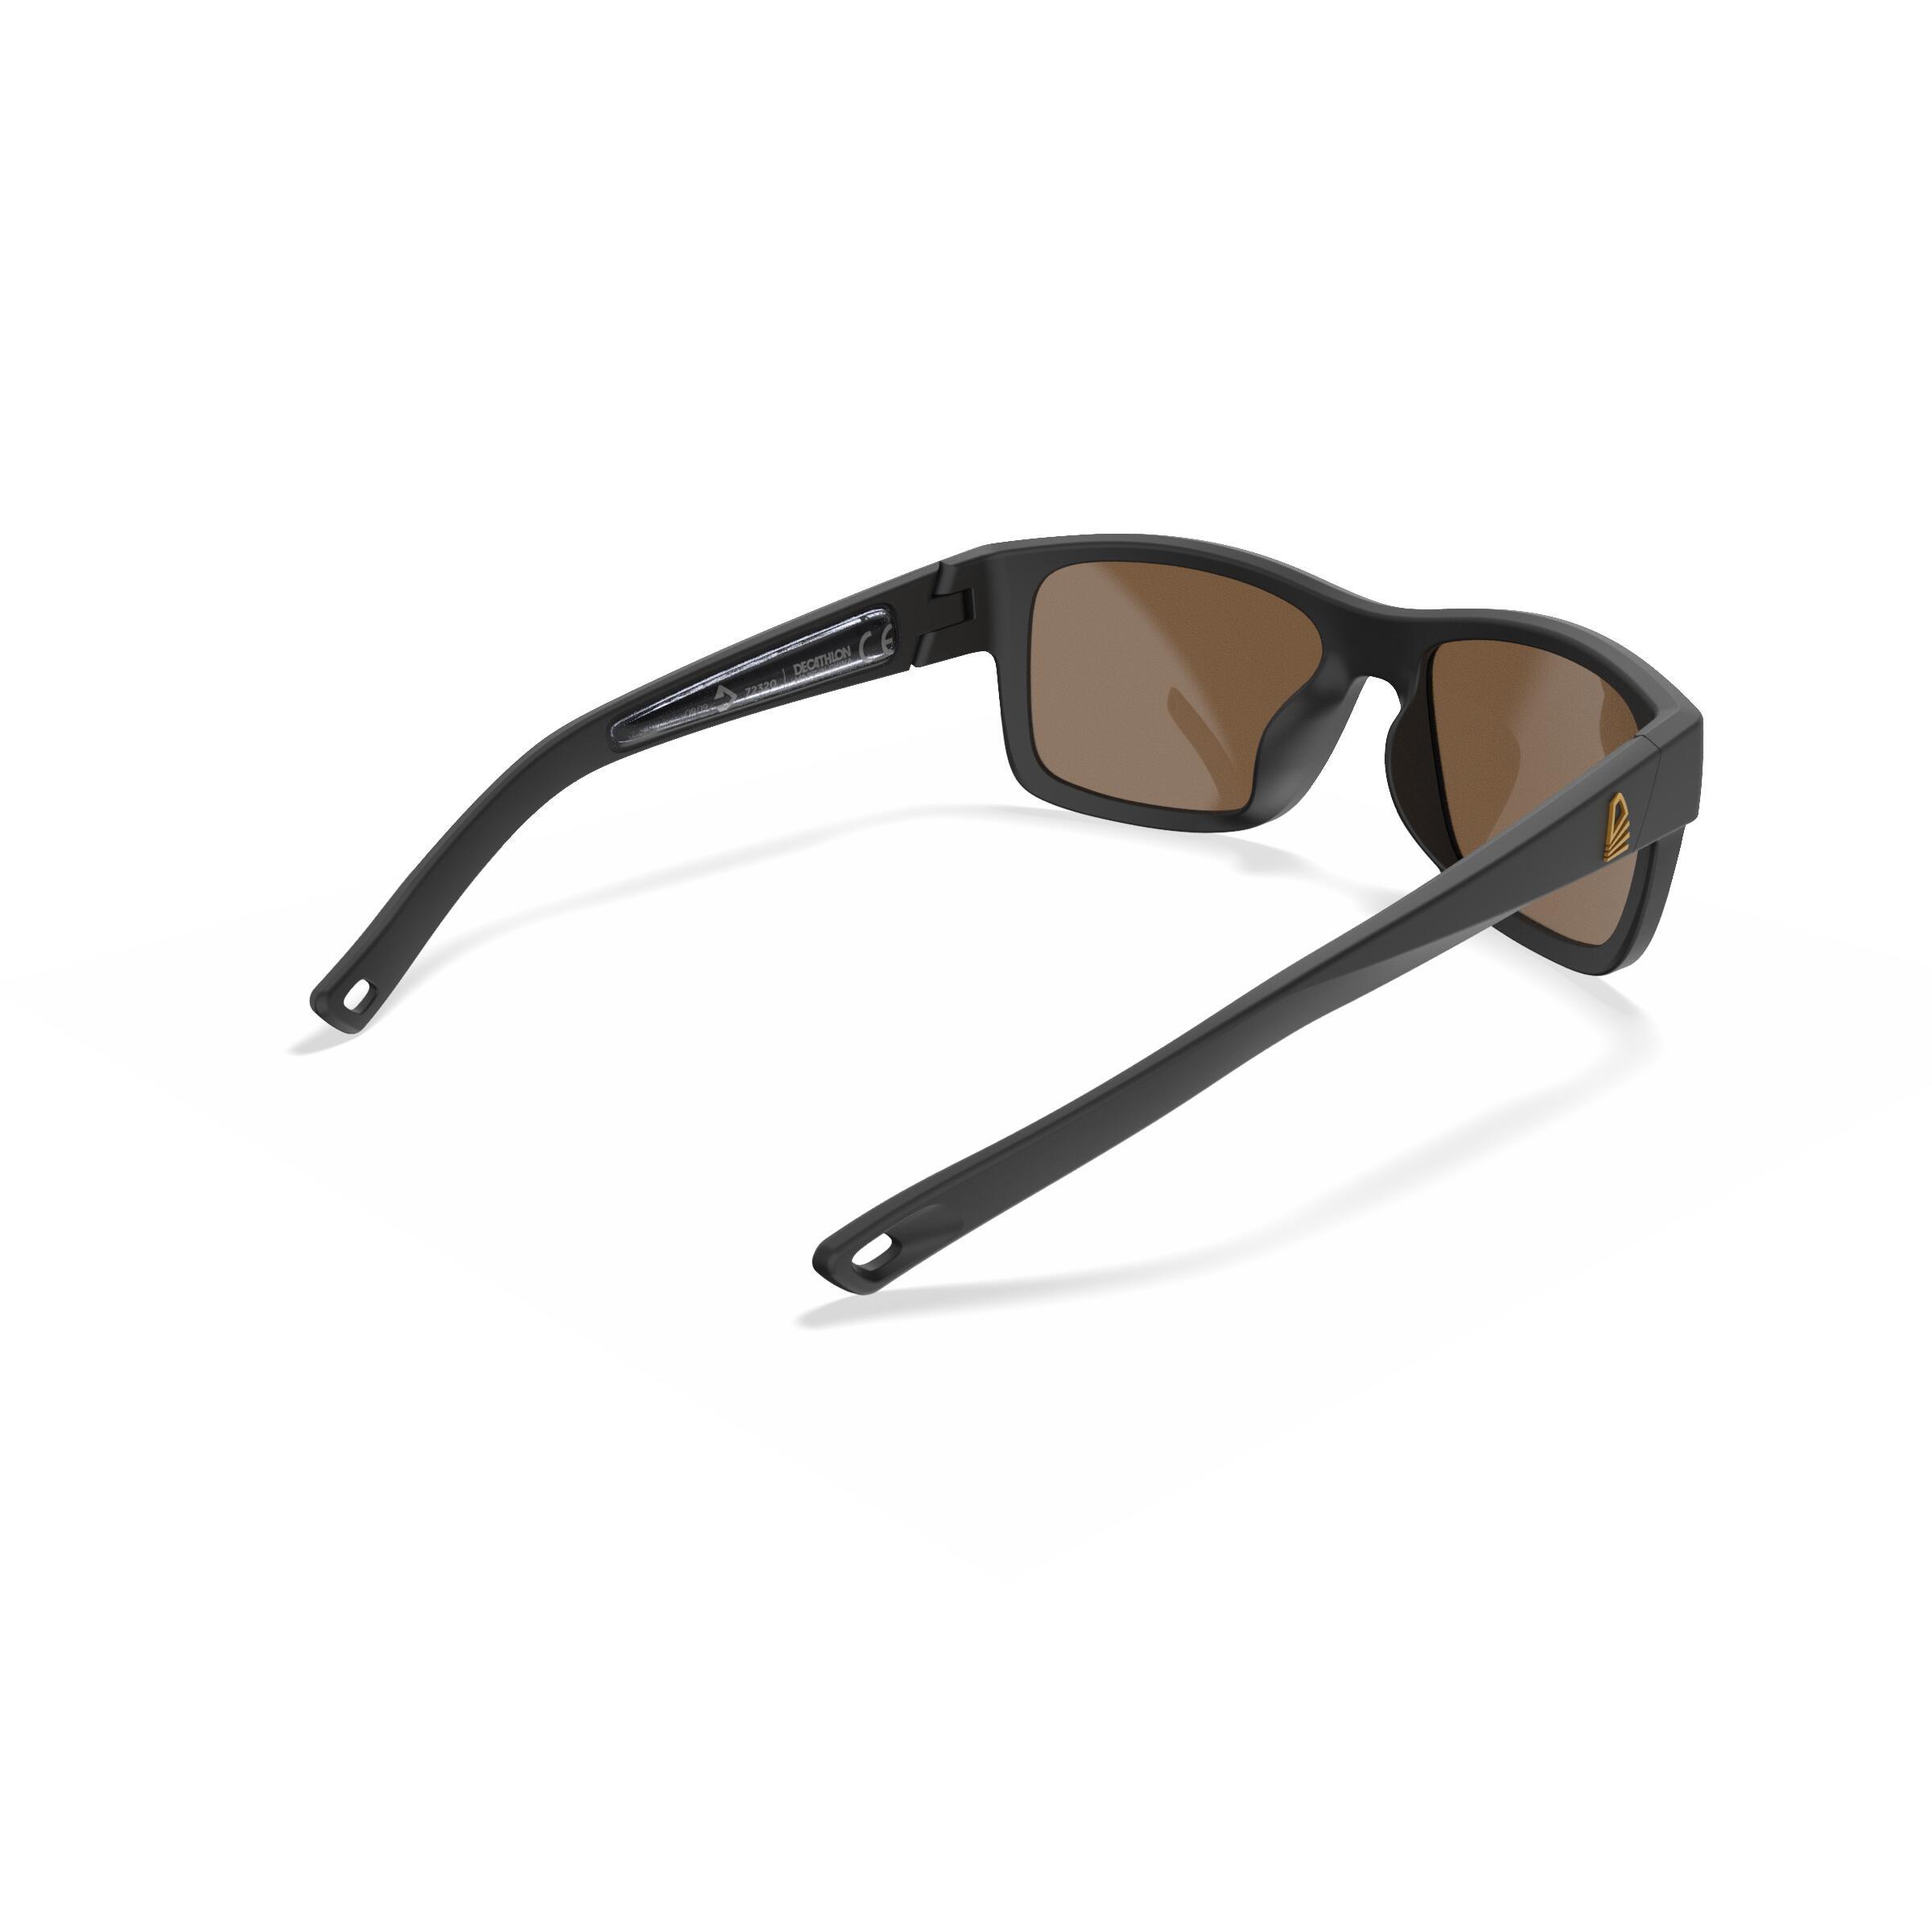 Sailing Floating Polarised Sunglasses SAILING 100 Size S Black 6/9